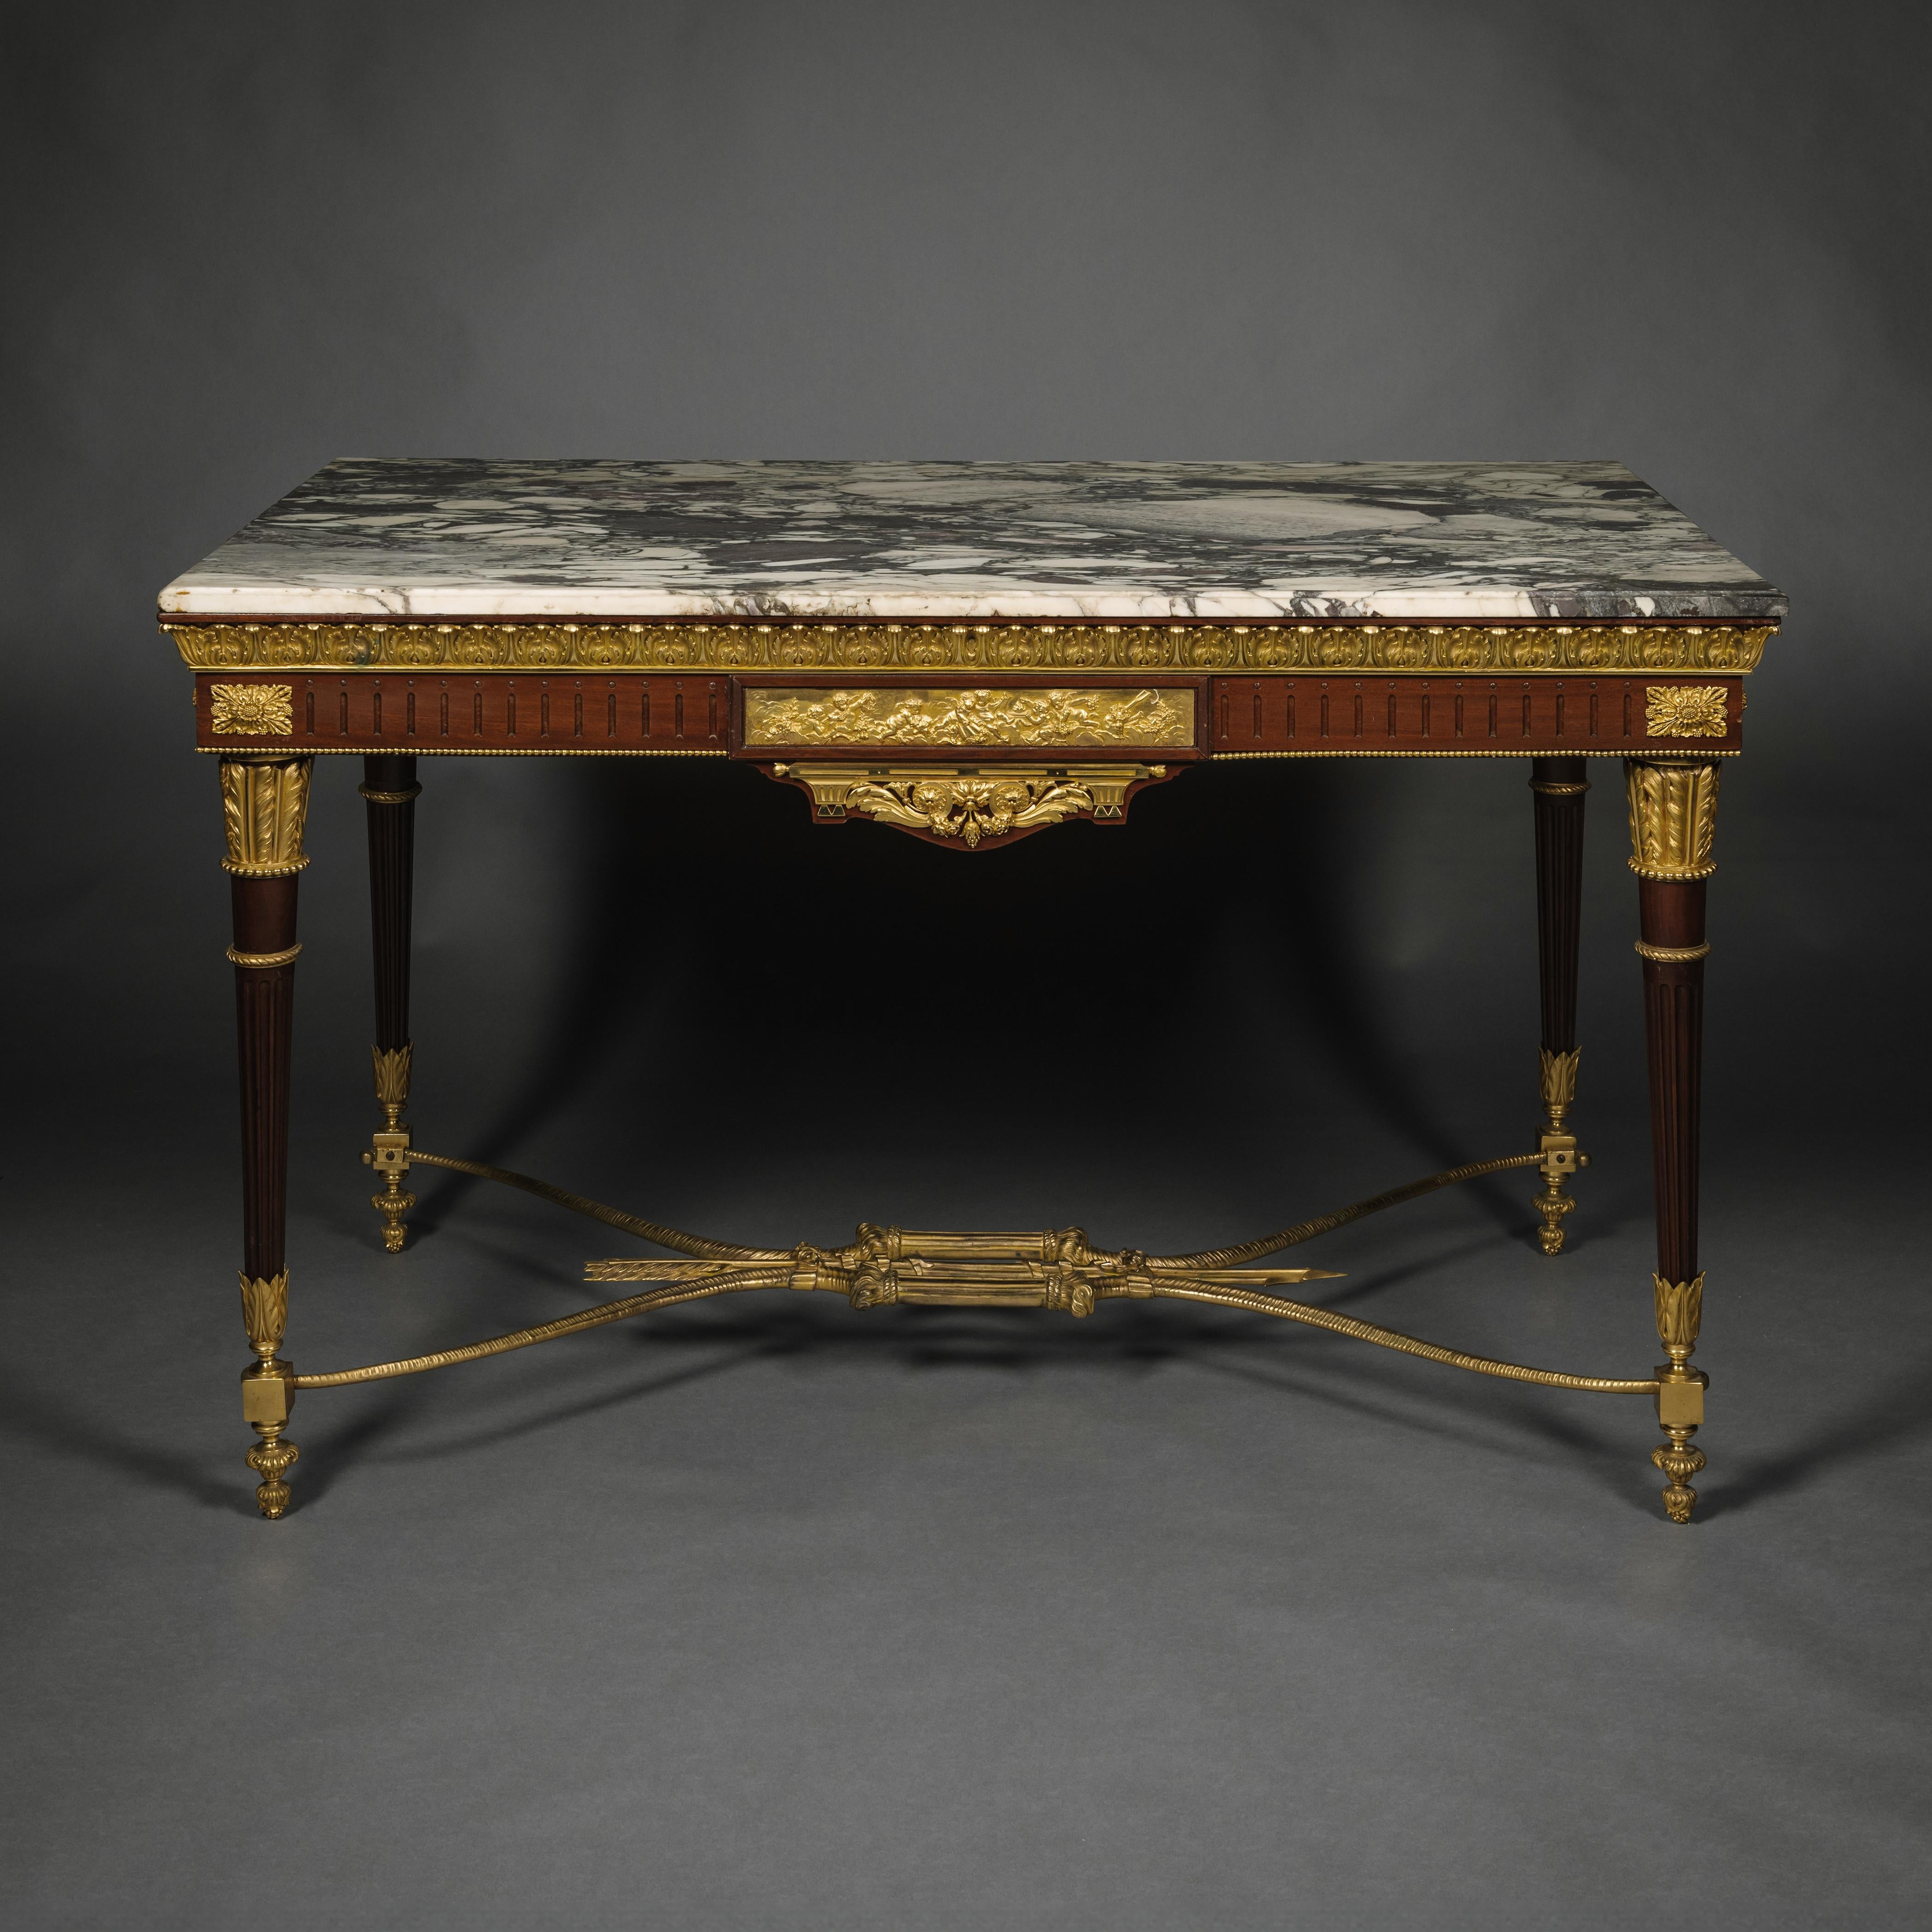 Ein vergoldeter Mahagoni-Mitteltisch im Louis-XVI-Stil mit Bronzebeschlägen.

Der Tisch mit einer Marmorplatte aus Villefranche de Conflent mit zart violetten Mustern auf weißem Grund. Unter der Marmorplatte befindet sich ein vergoldeter Bronzerand